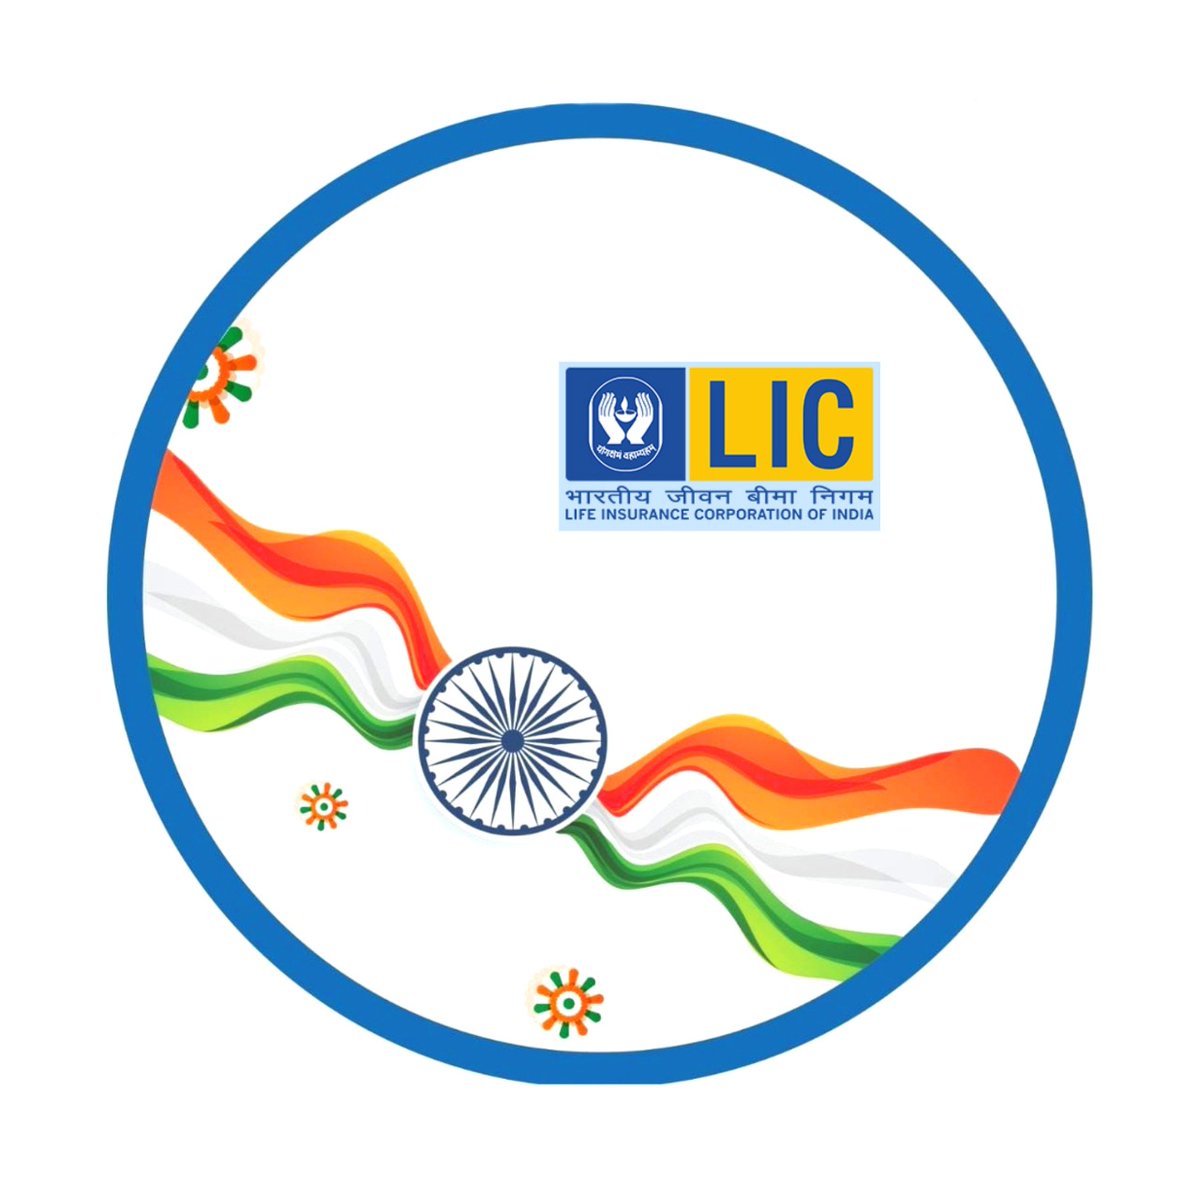 LIC India Forever Twitterren: 